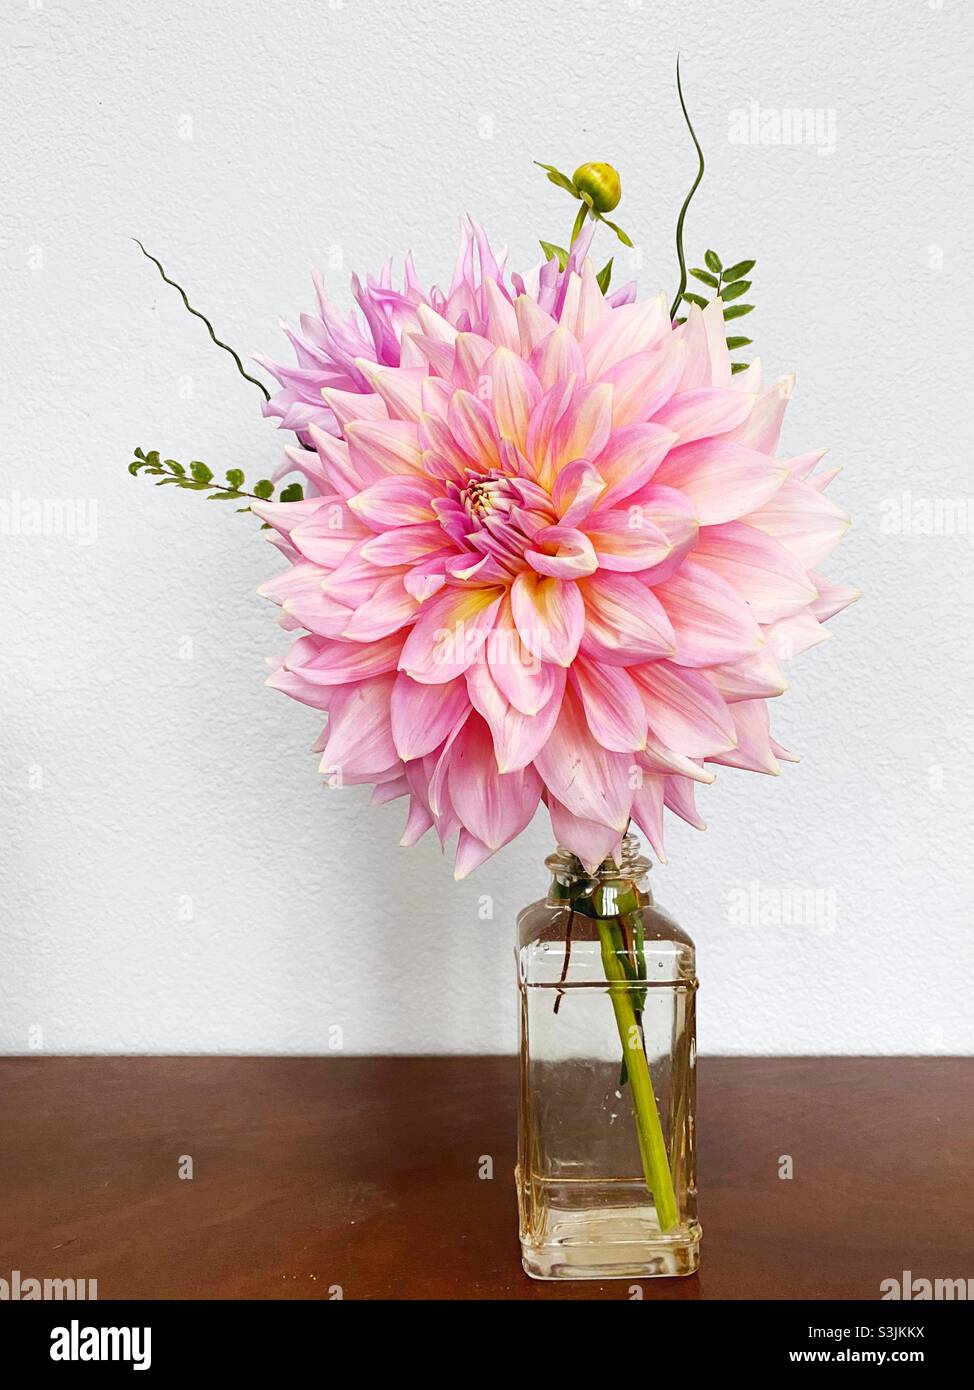 Fleurs de dahlia géantes dans un vase Photo Stock - Alamy